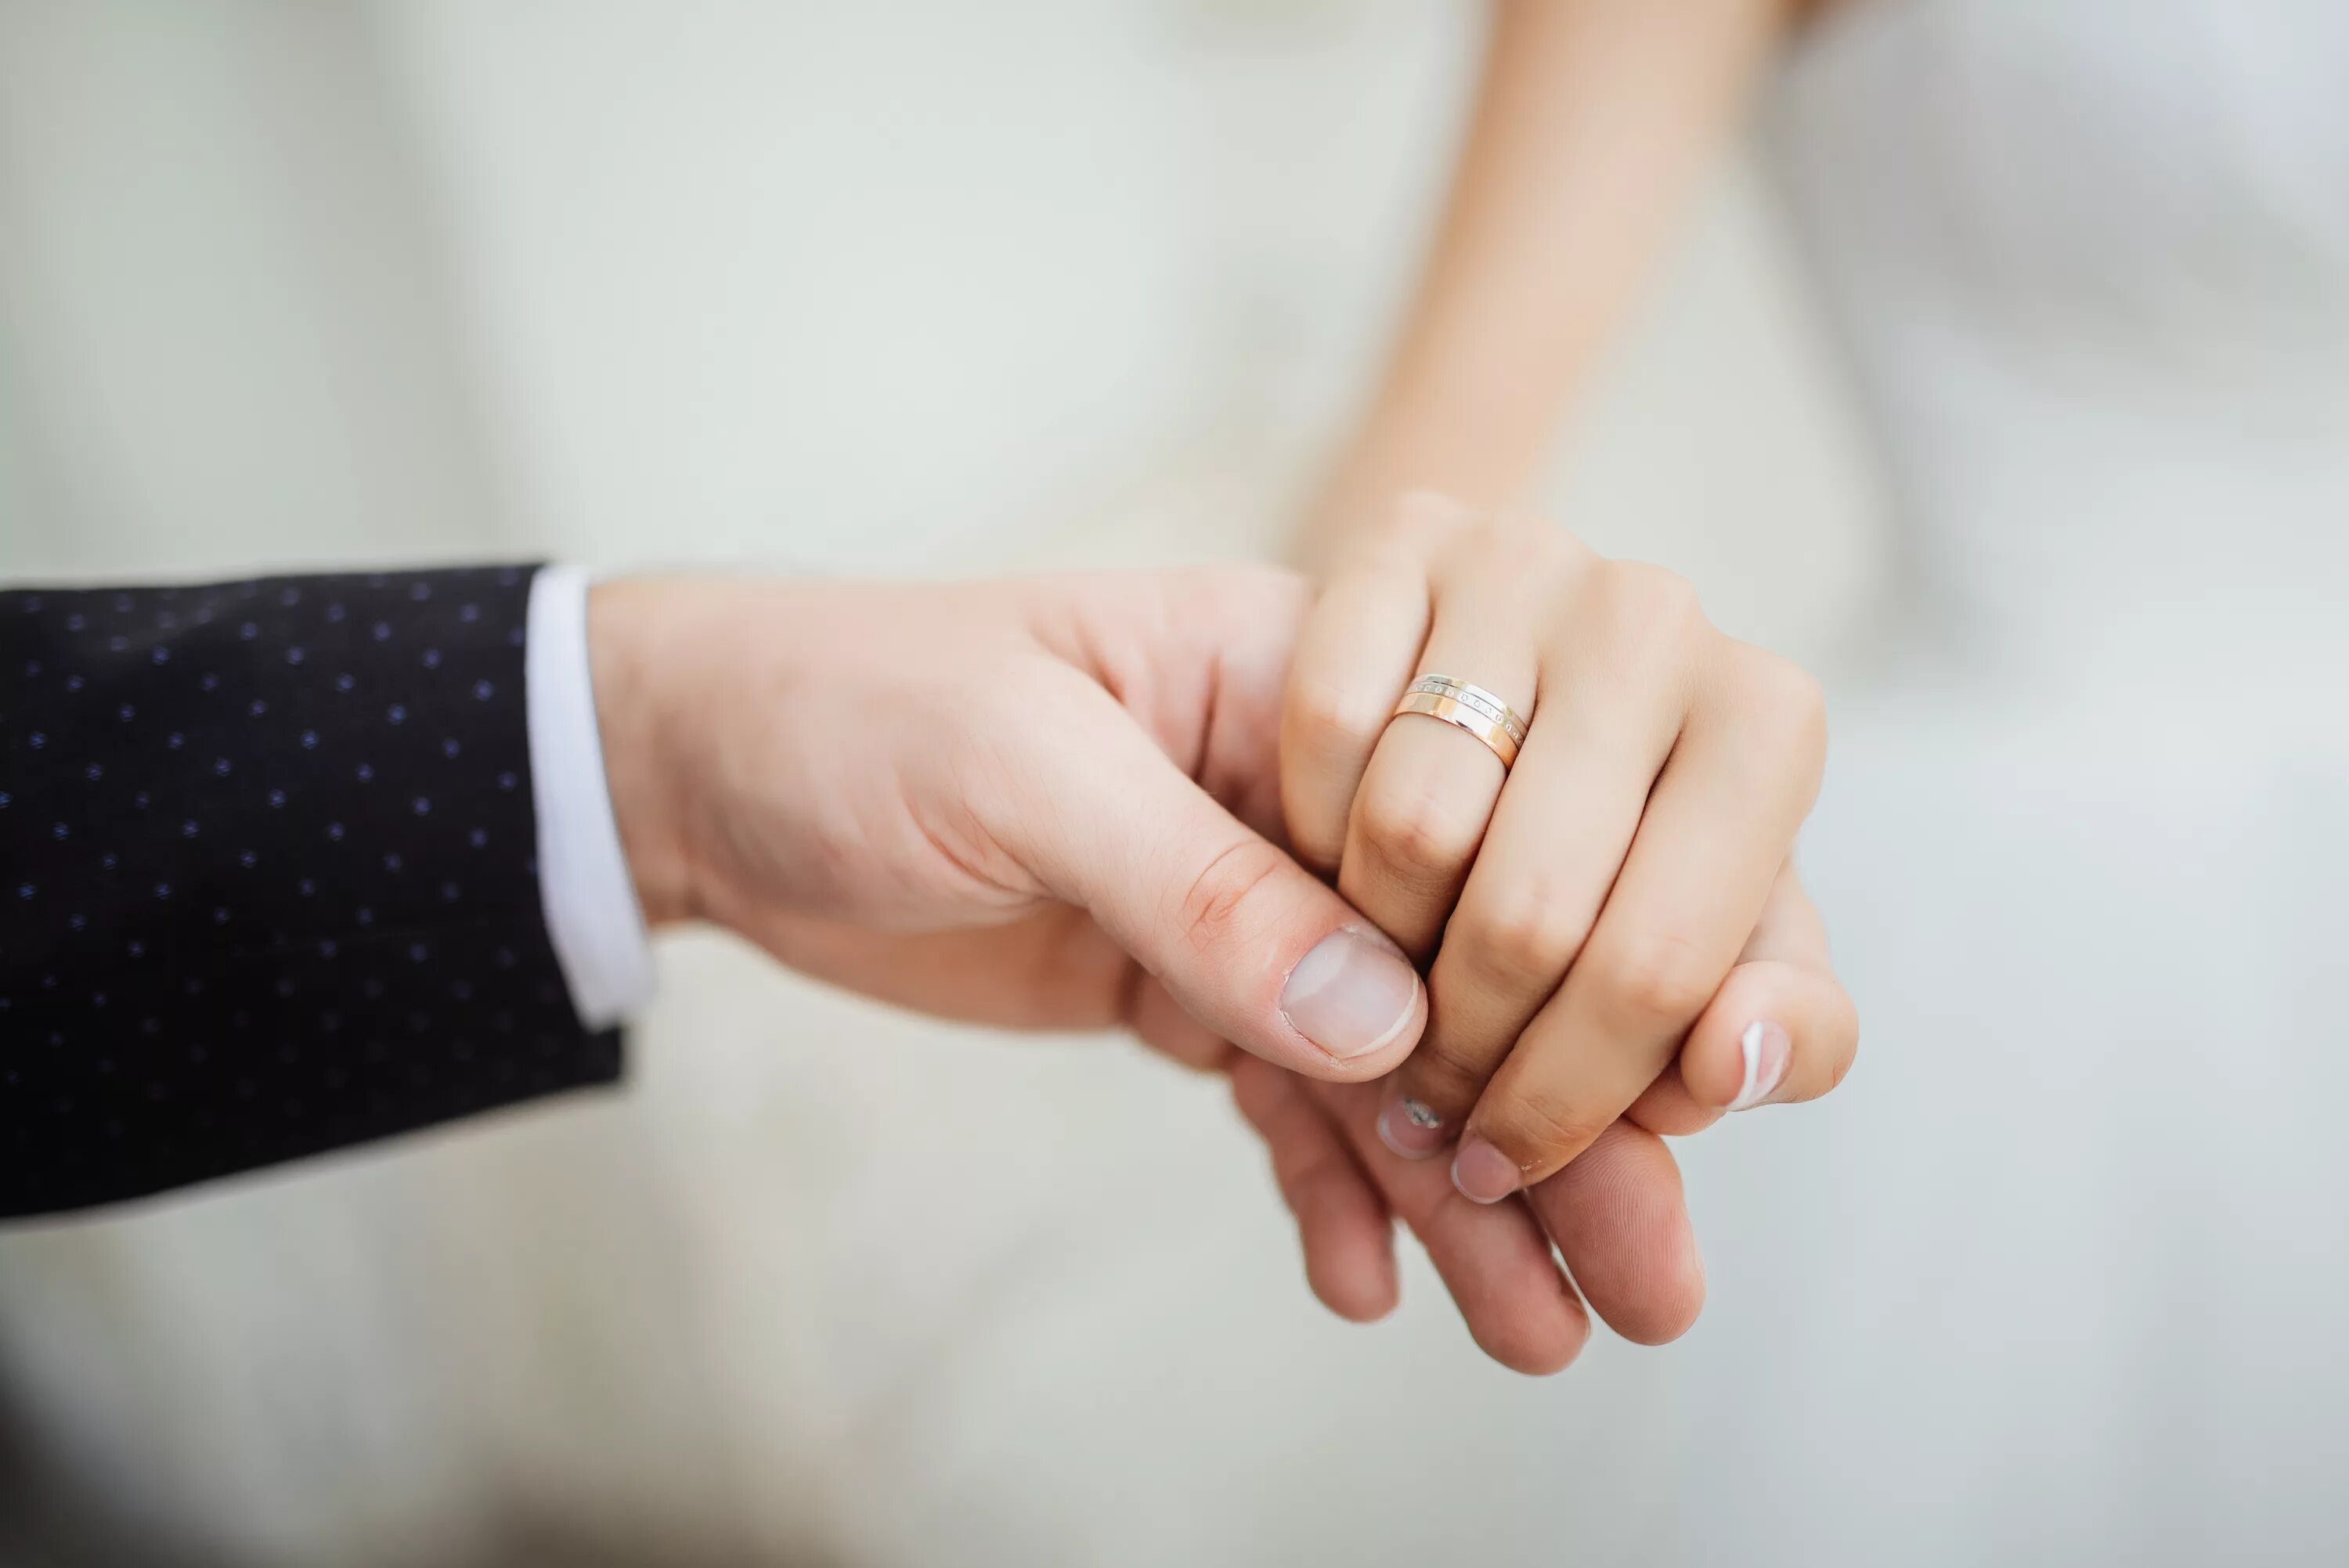 Свадьба руки с кольцами. Обручальные кольца на руках. Вступающим в брак. Вступление в брак руки кольца.